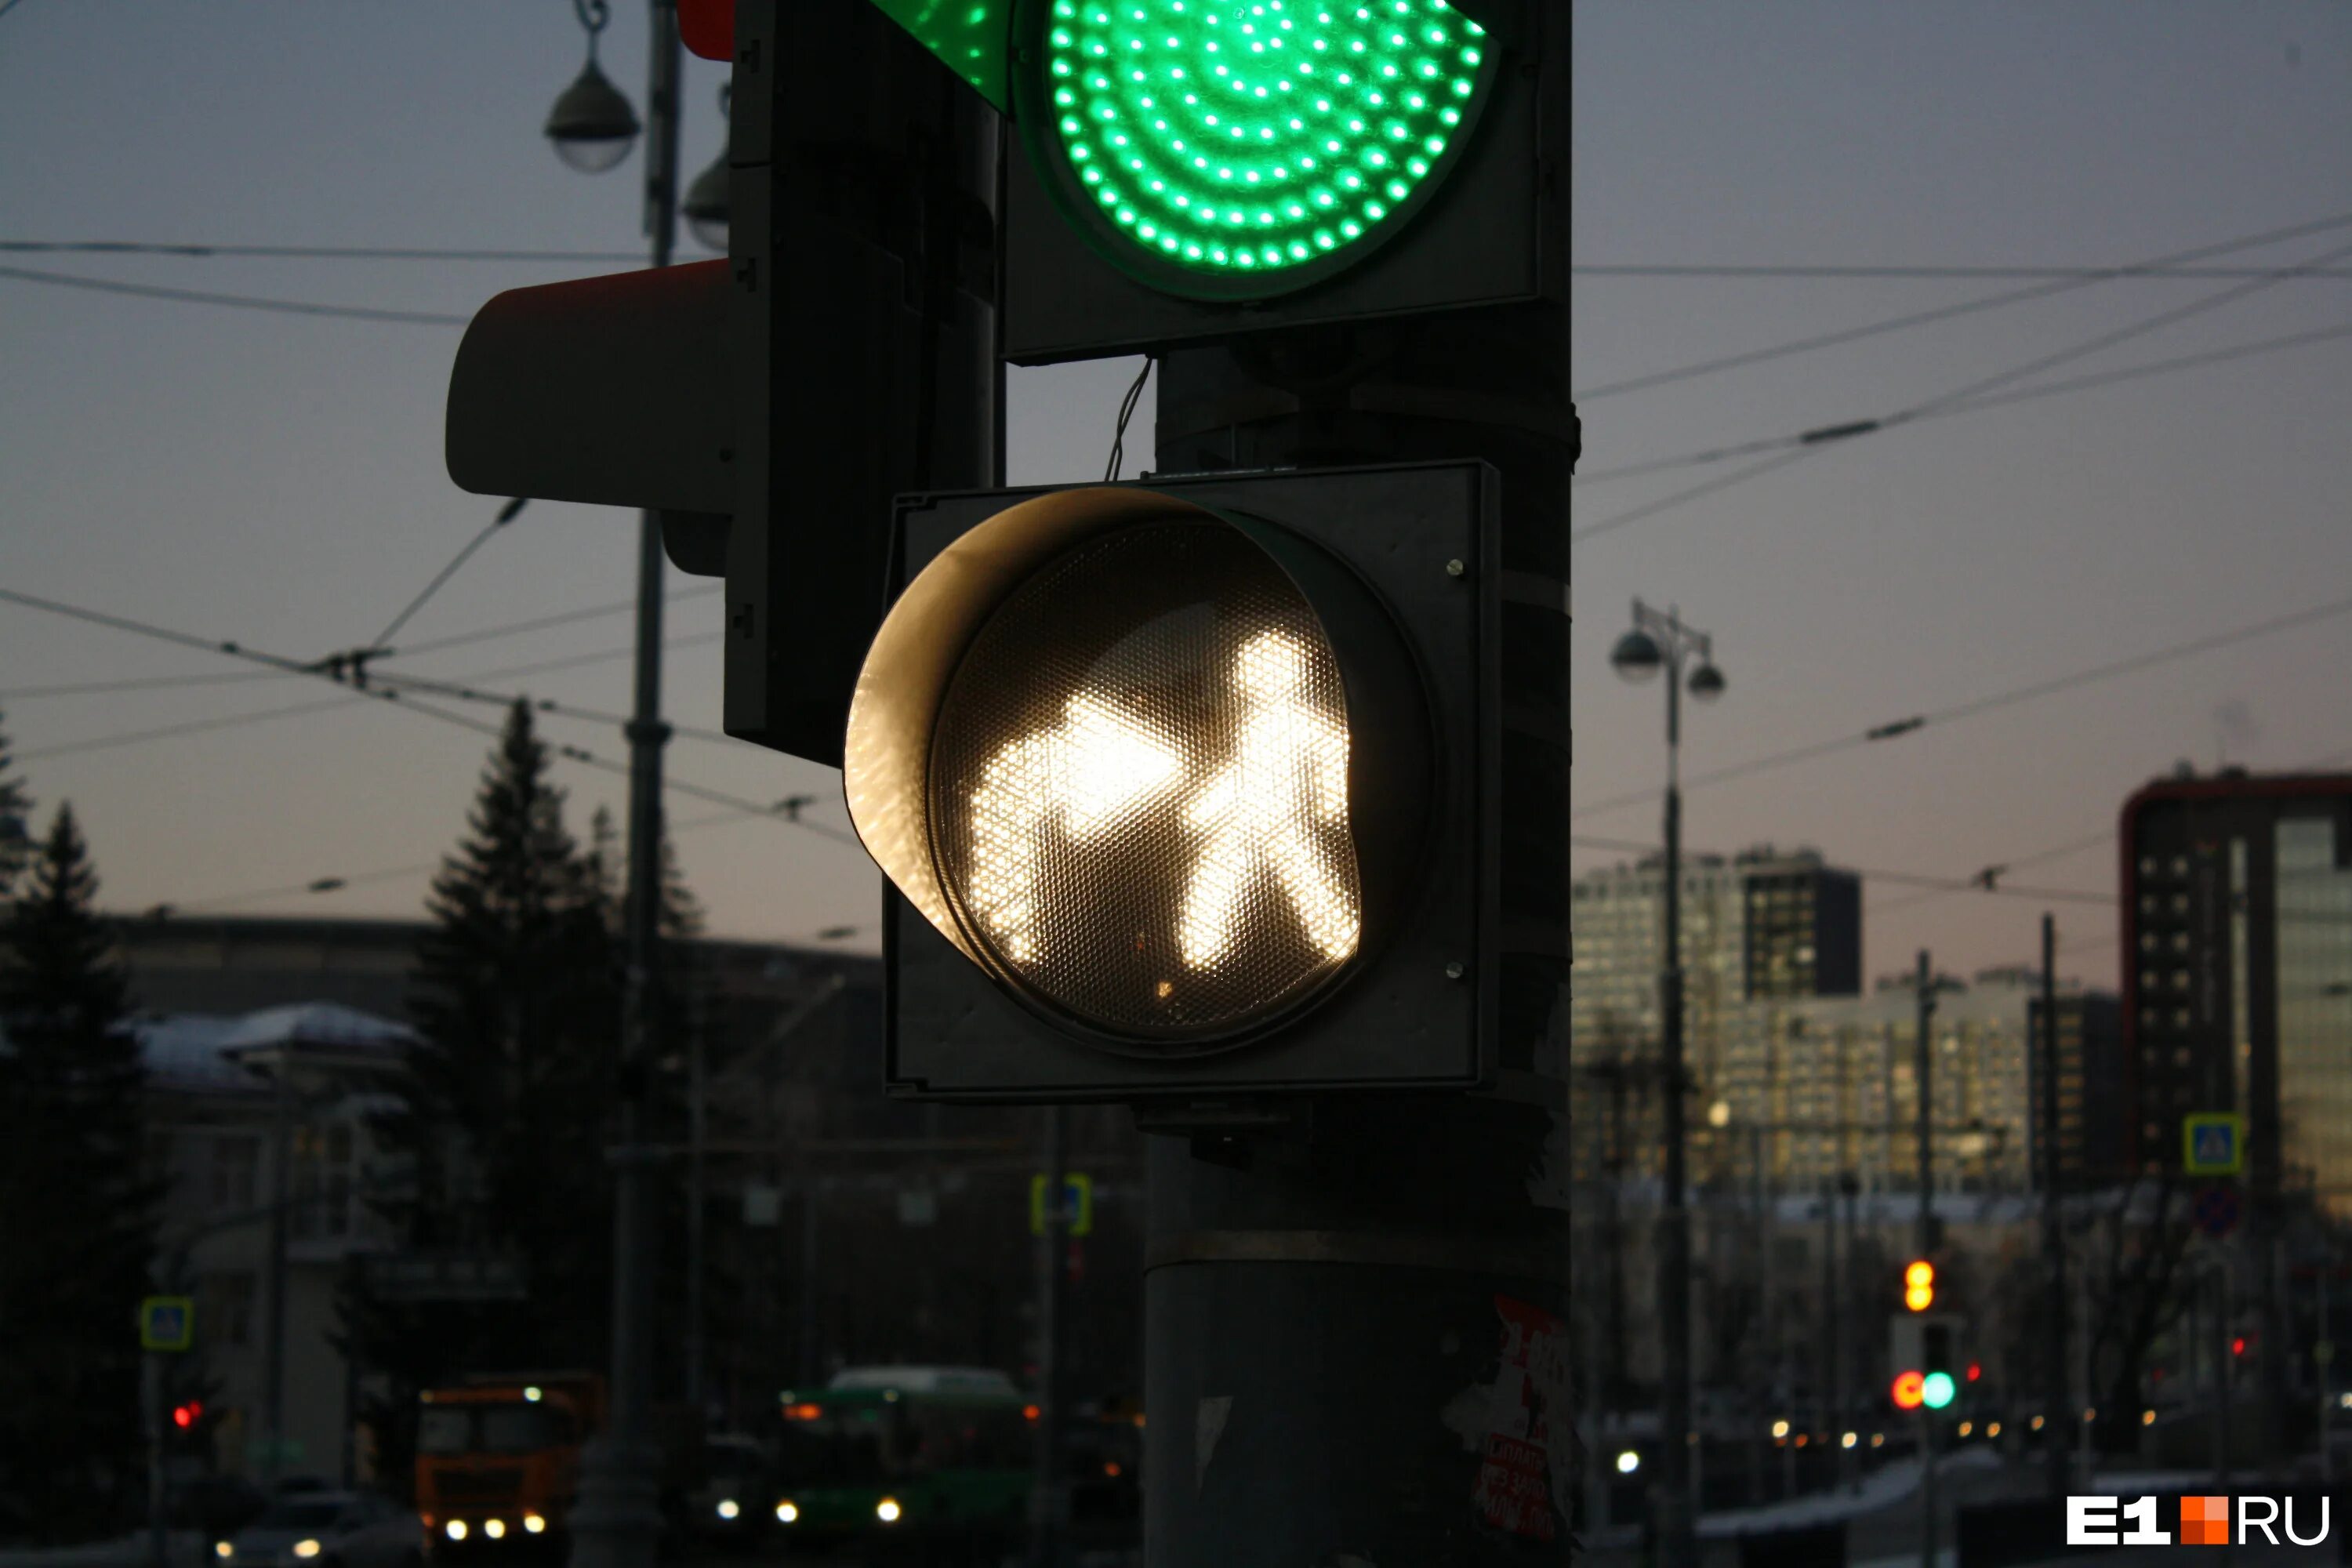 Светофор с доп секцией. Новые светофоры. Доп секция светофора для пешеходов. Зеленый сигнал светофора.